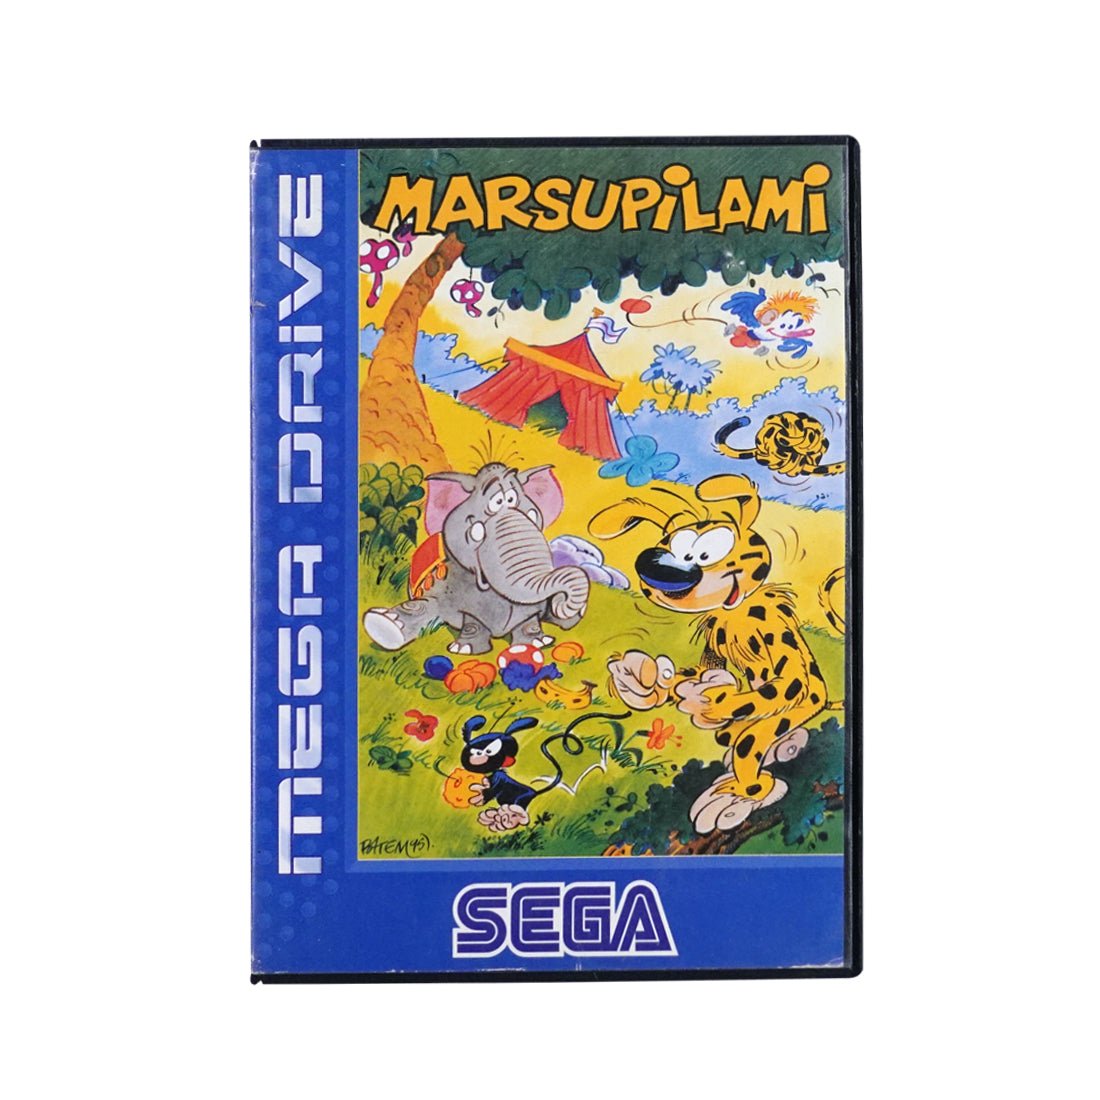 (Pre-Owned) Marsupilami - Sega Mega Drive - Store 974 | ستور ٩٧٤